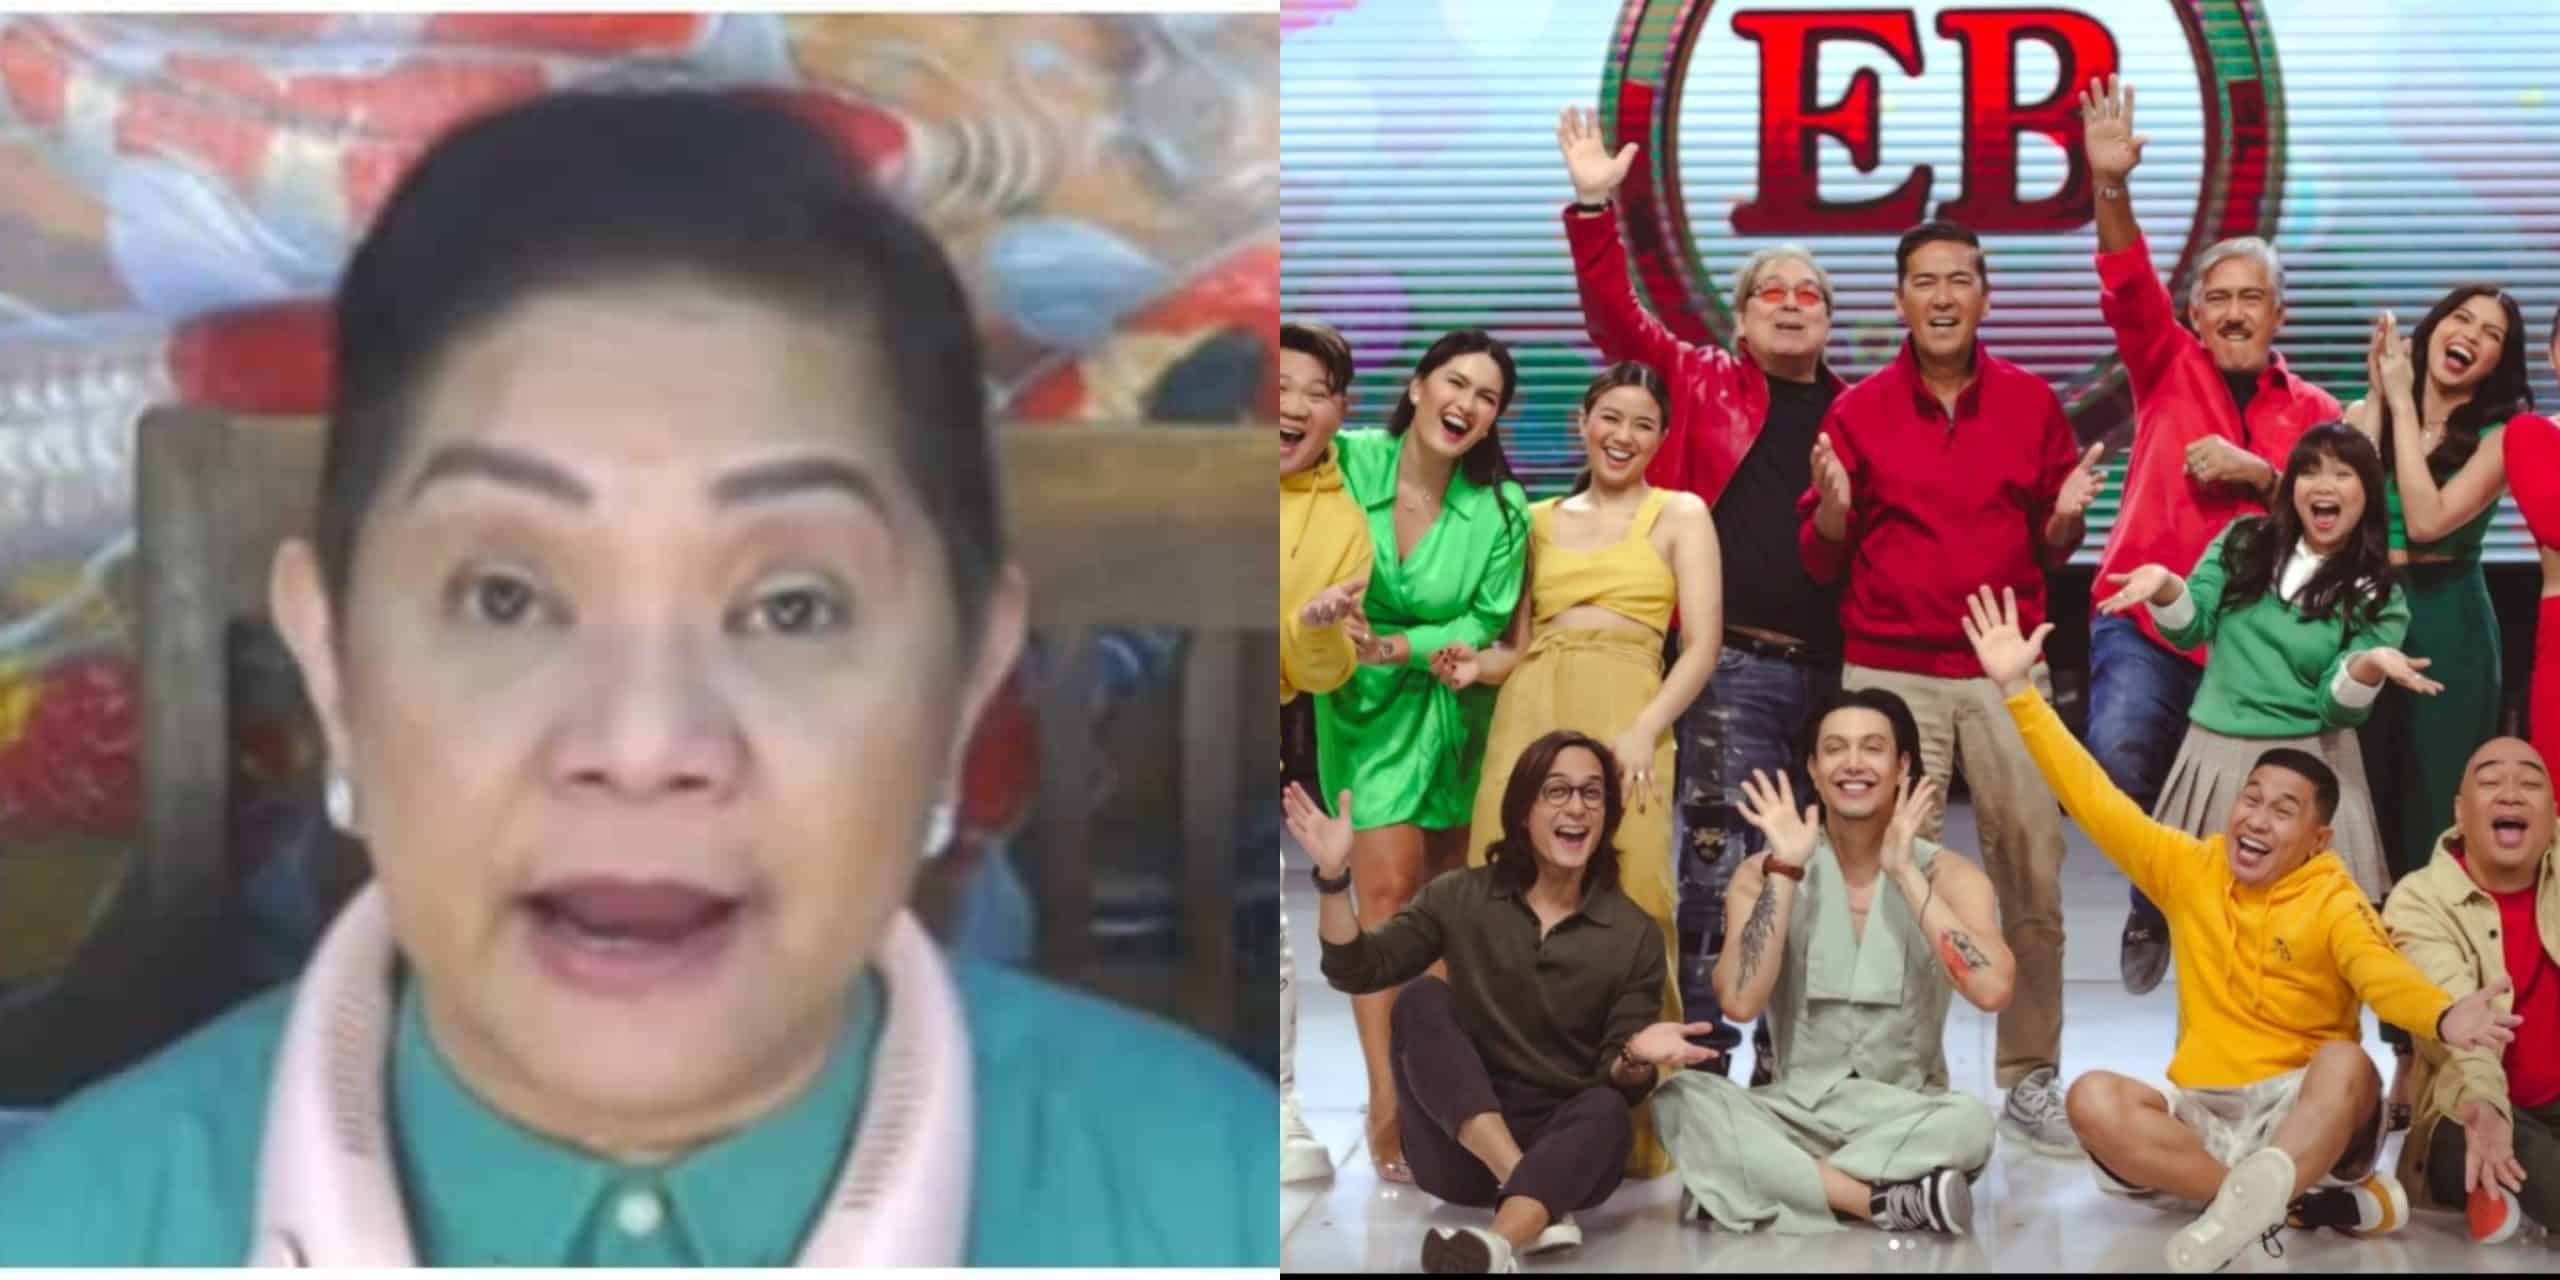 Goodbye Dabarkads? Cristy Fermin reveals internal issue in Eat Bulaga